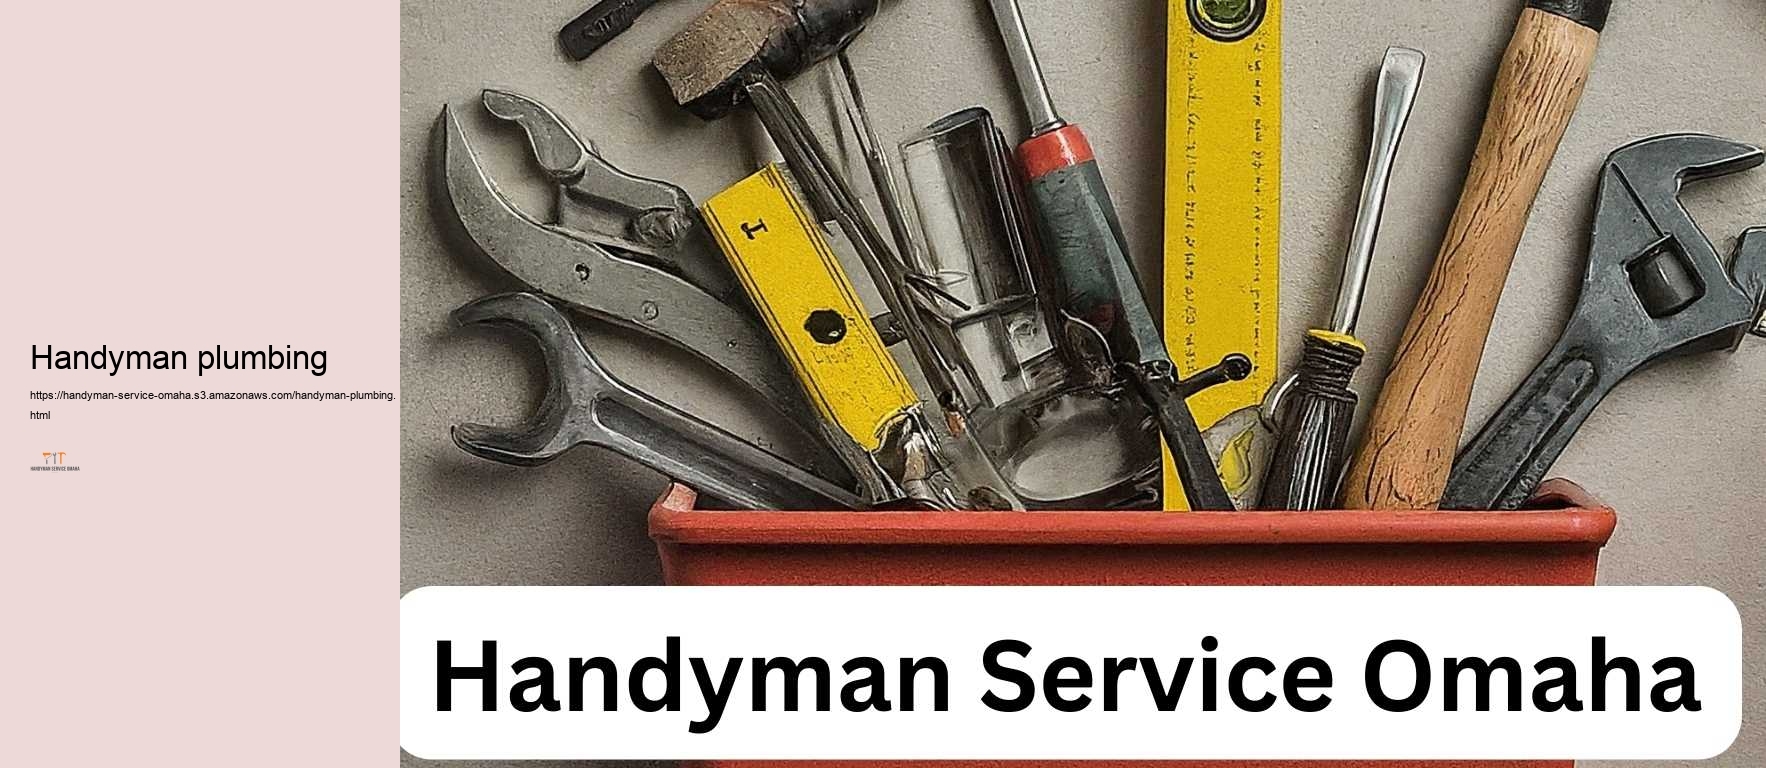 Handyman plumbing